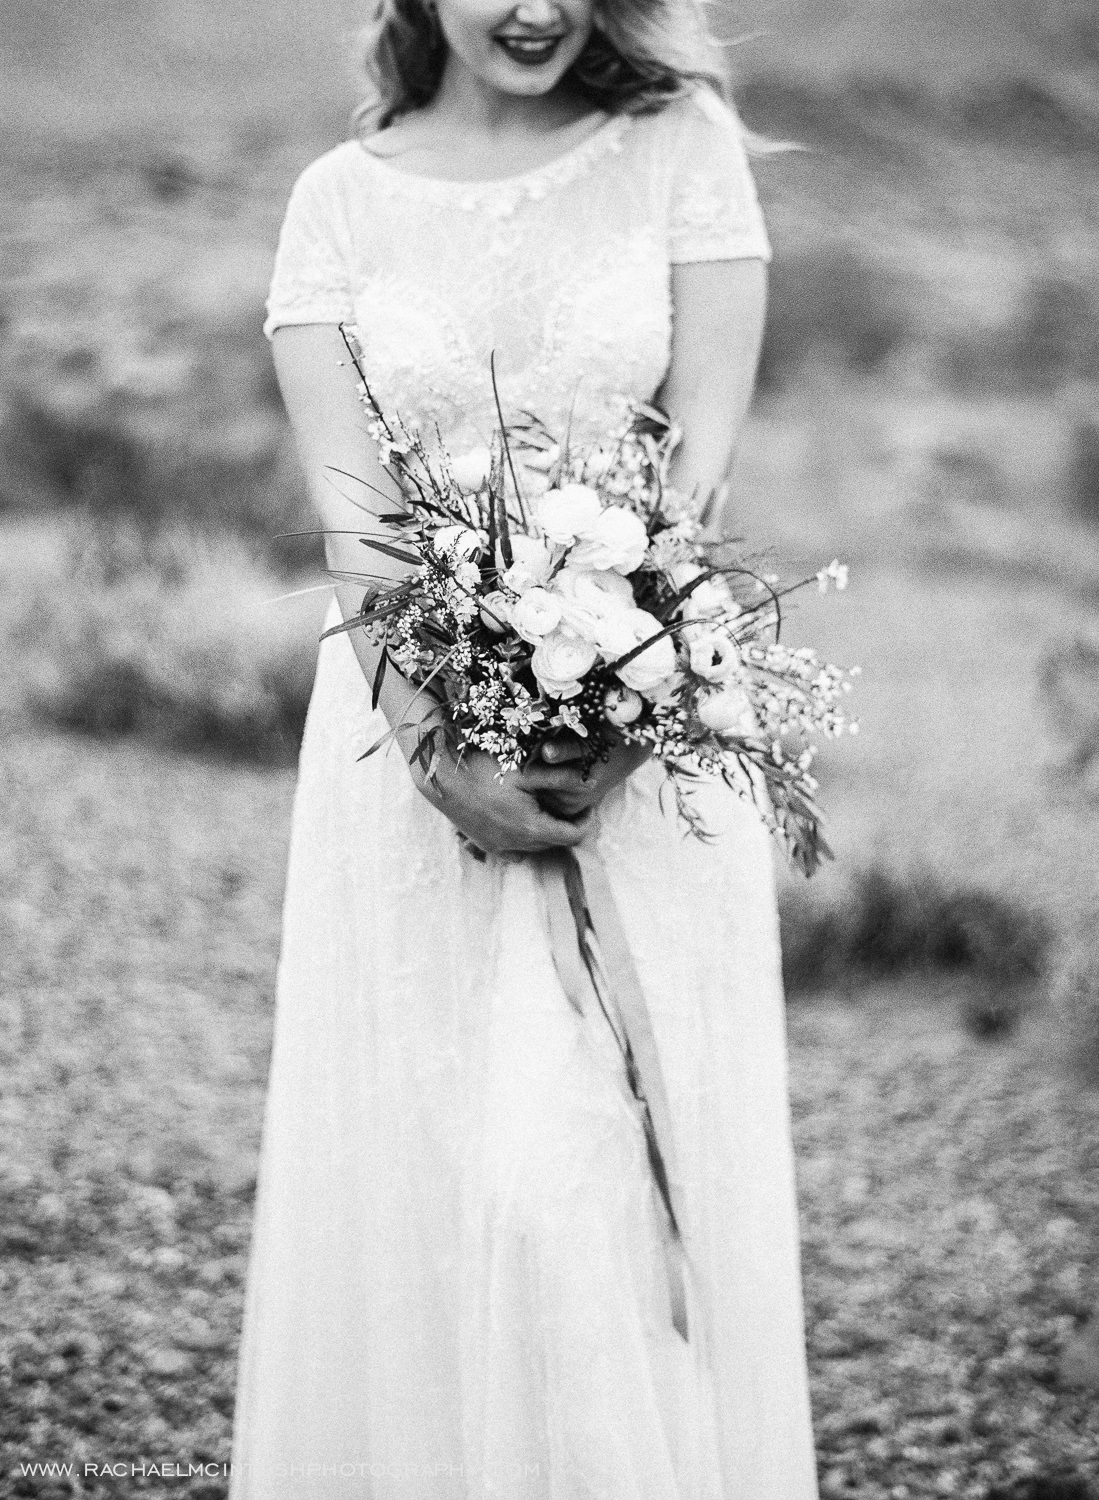 Khrystyana-styled-shoot-desert-wedding-2.jpg